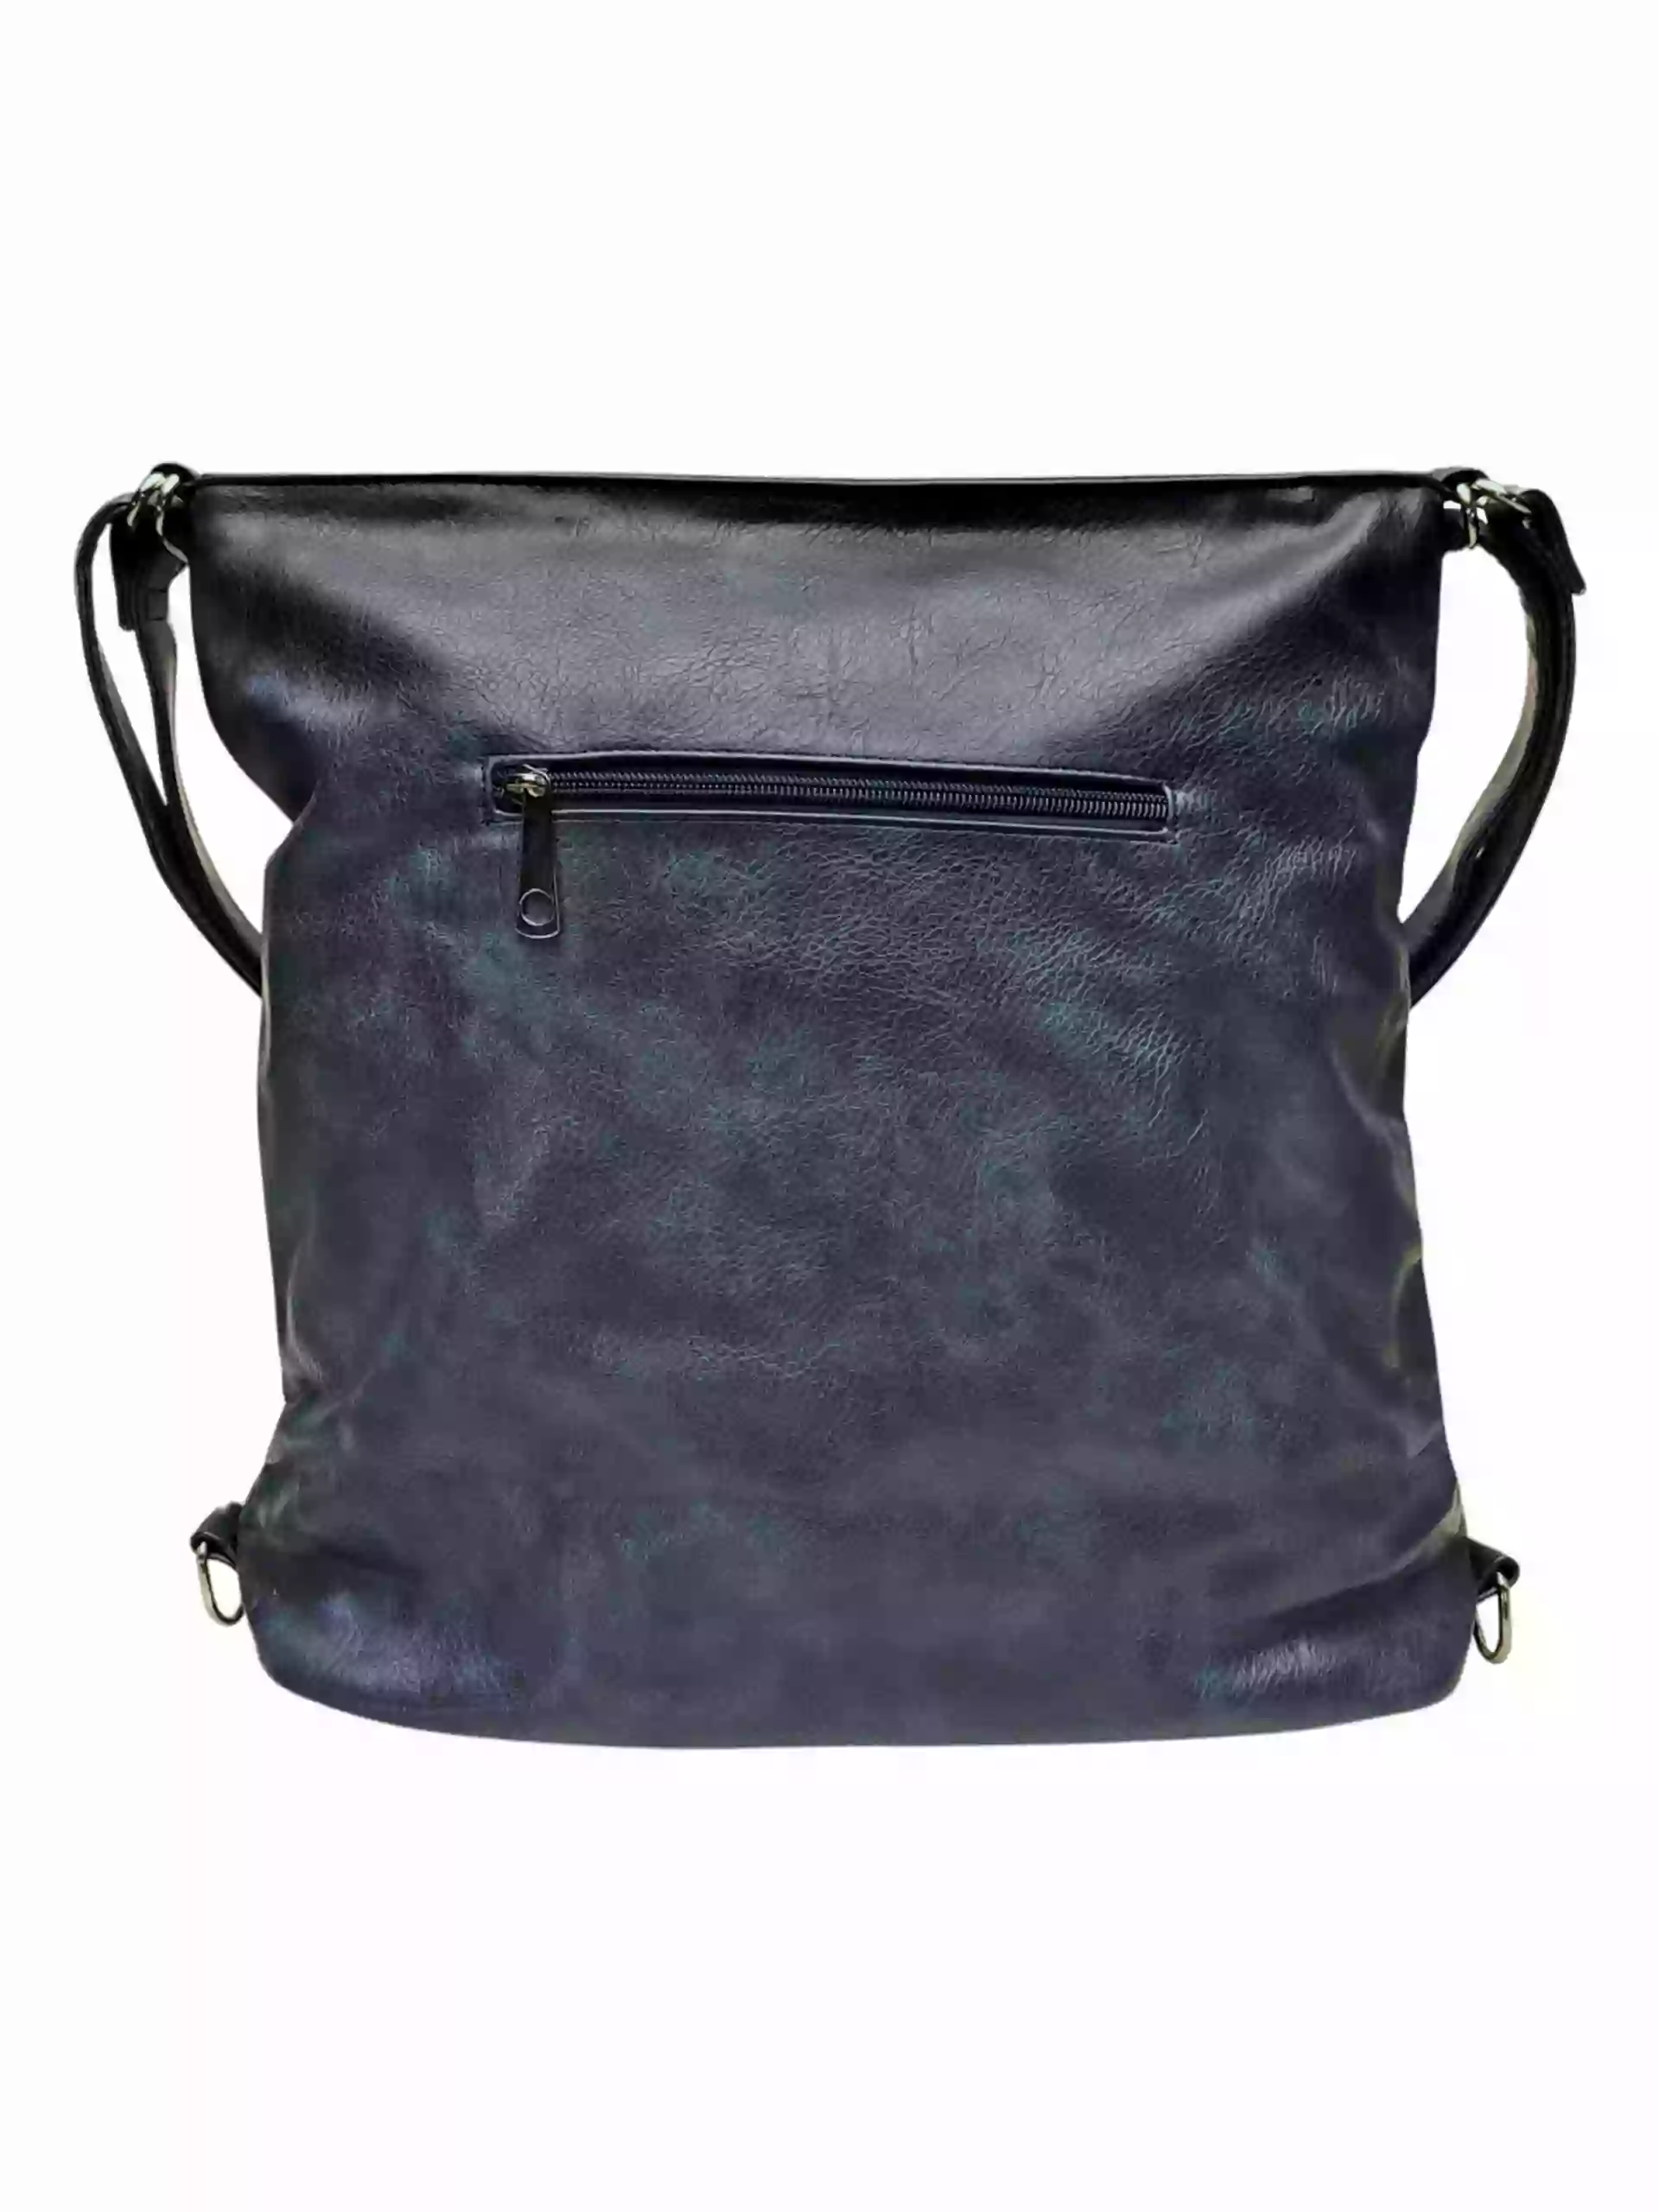 Velký tmavě modrý kabelko-batoh s kapsou, Tapple, H23904, zadní strana kabelko-batohu